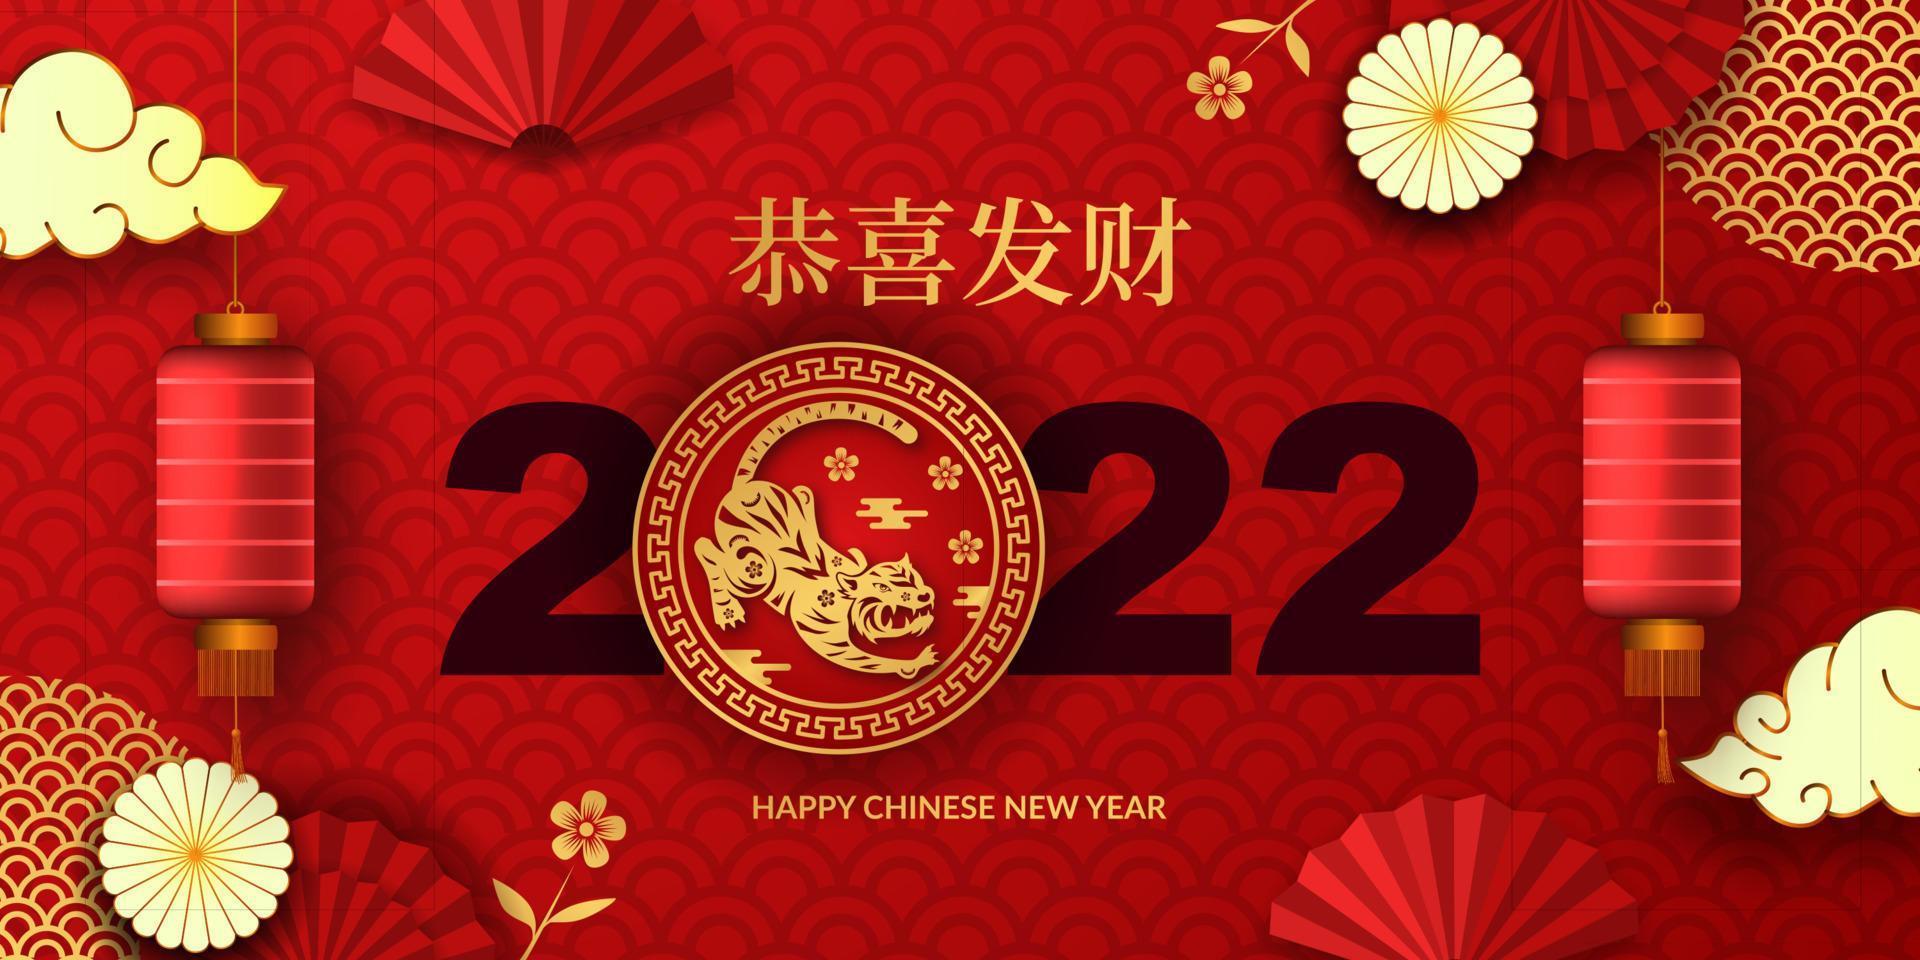 gott kinesiskt nytt år 2022 år av tiger. 3d röd lycklig traditionell prydnad, lykta, mönsterdekoration asiatisk gyllene färg för gratulationskortmall vektor